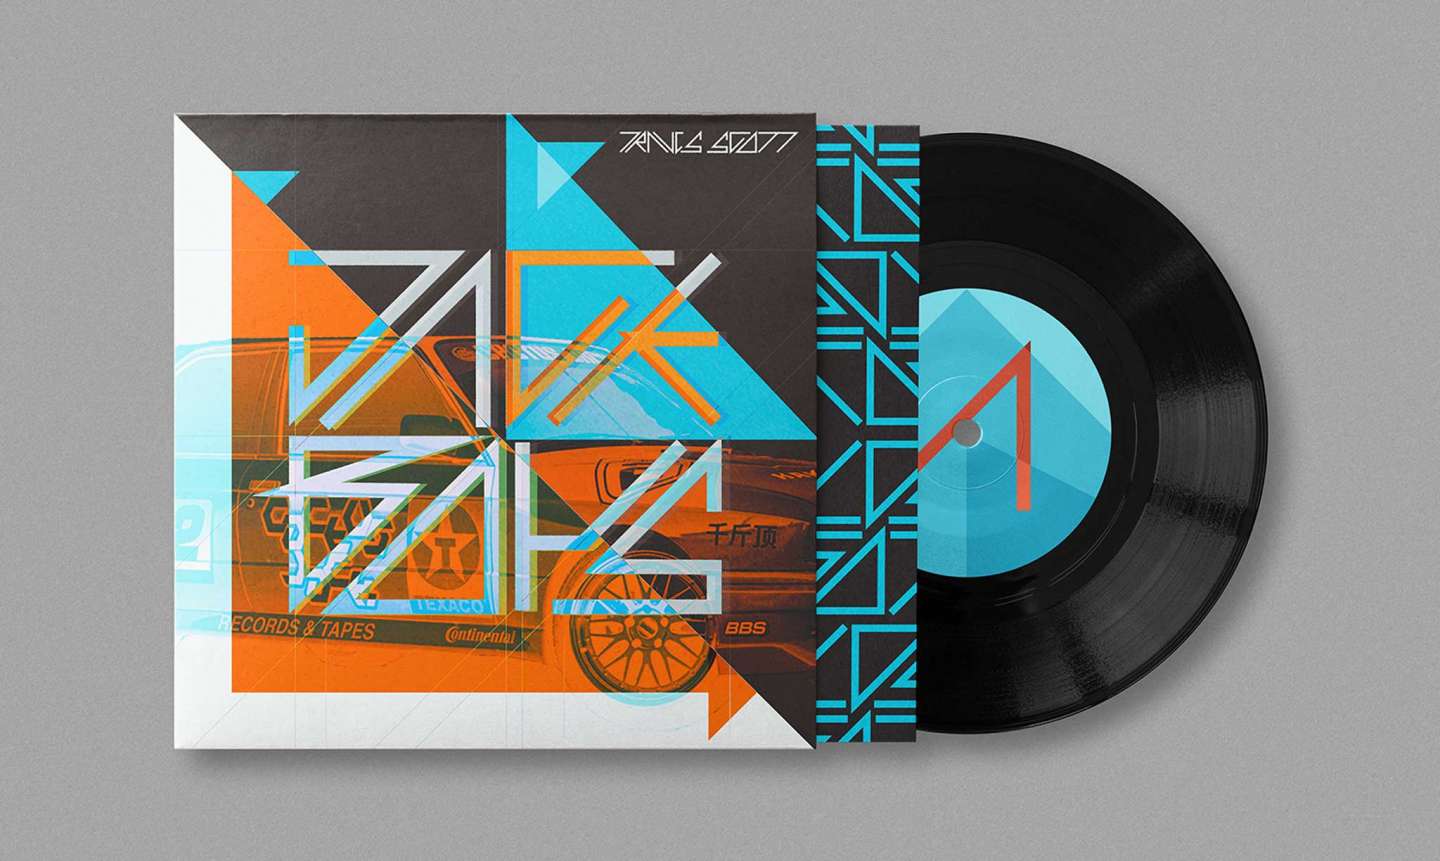 Travis Scott Album Cover and Type Design